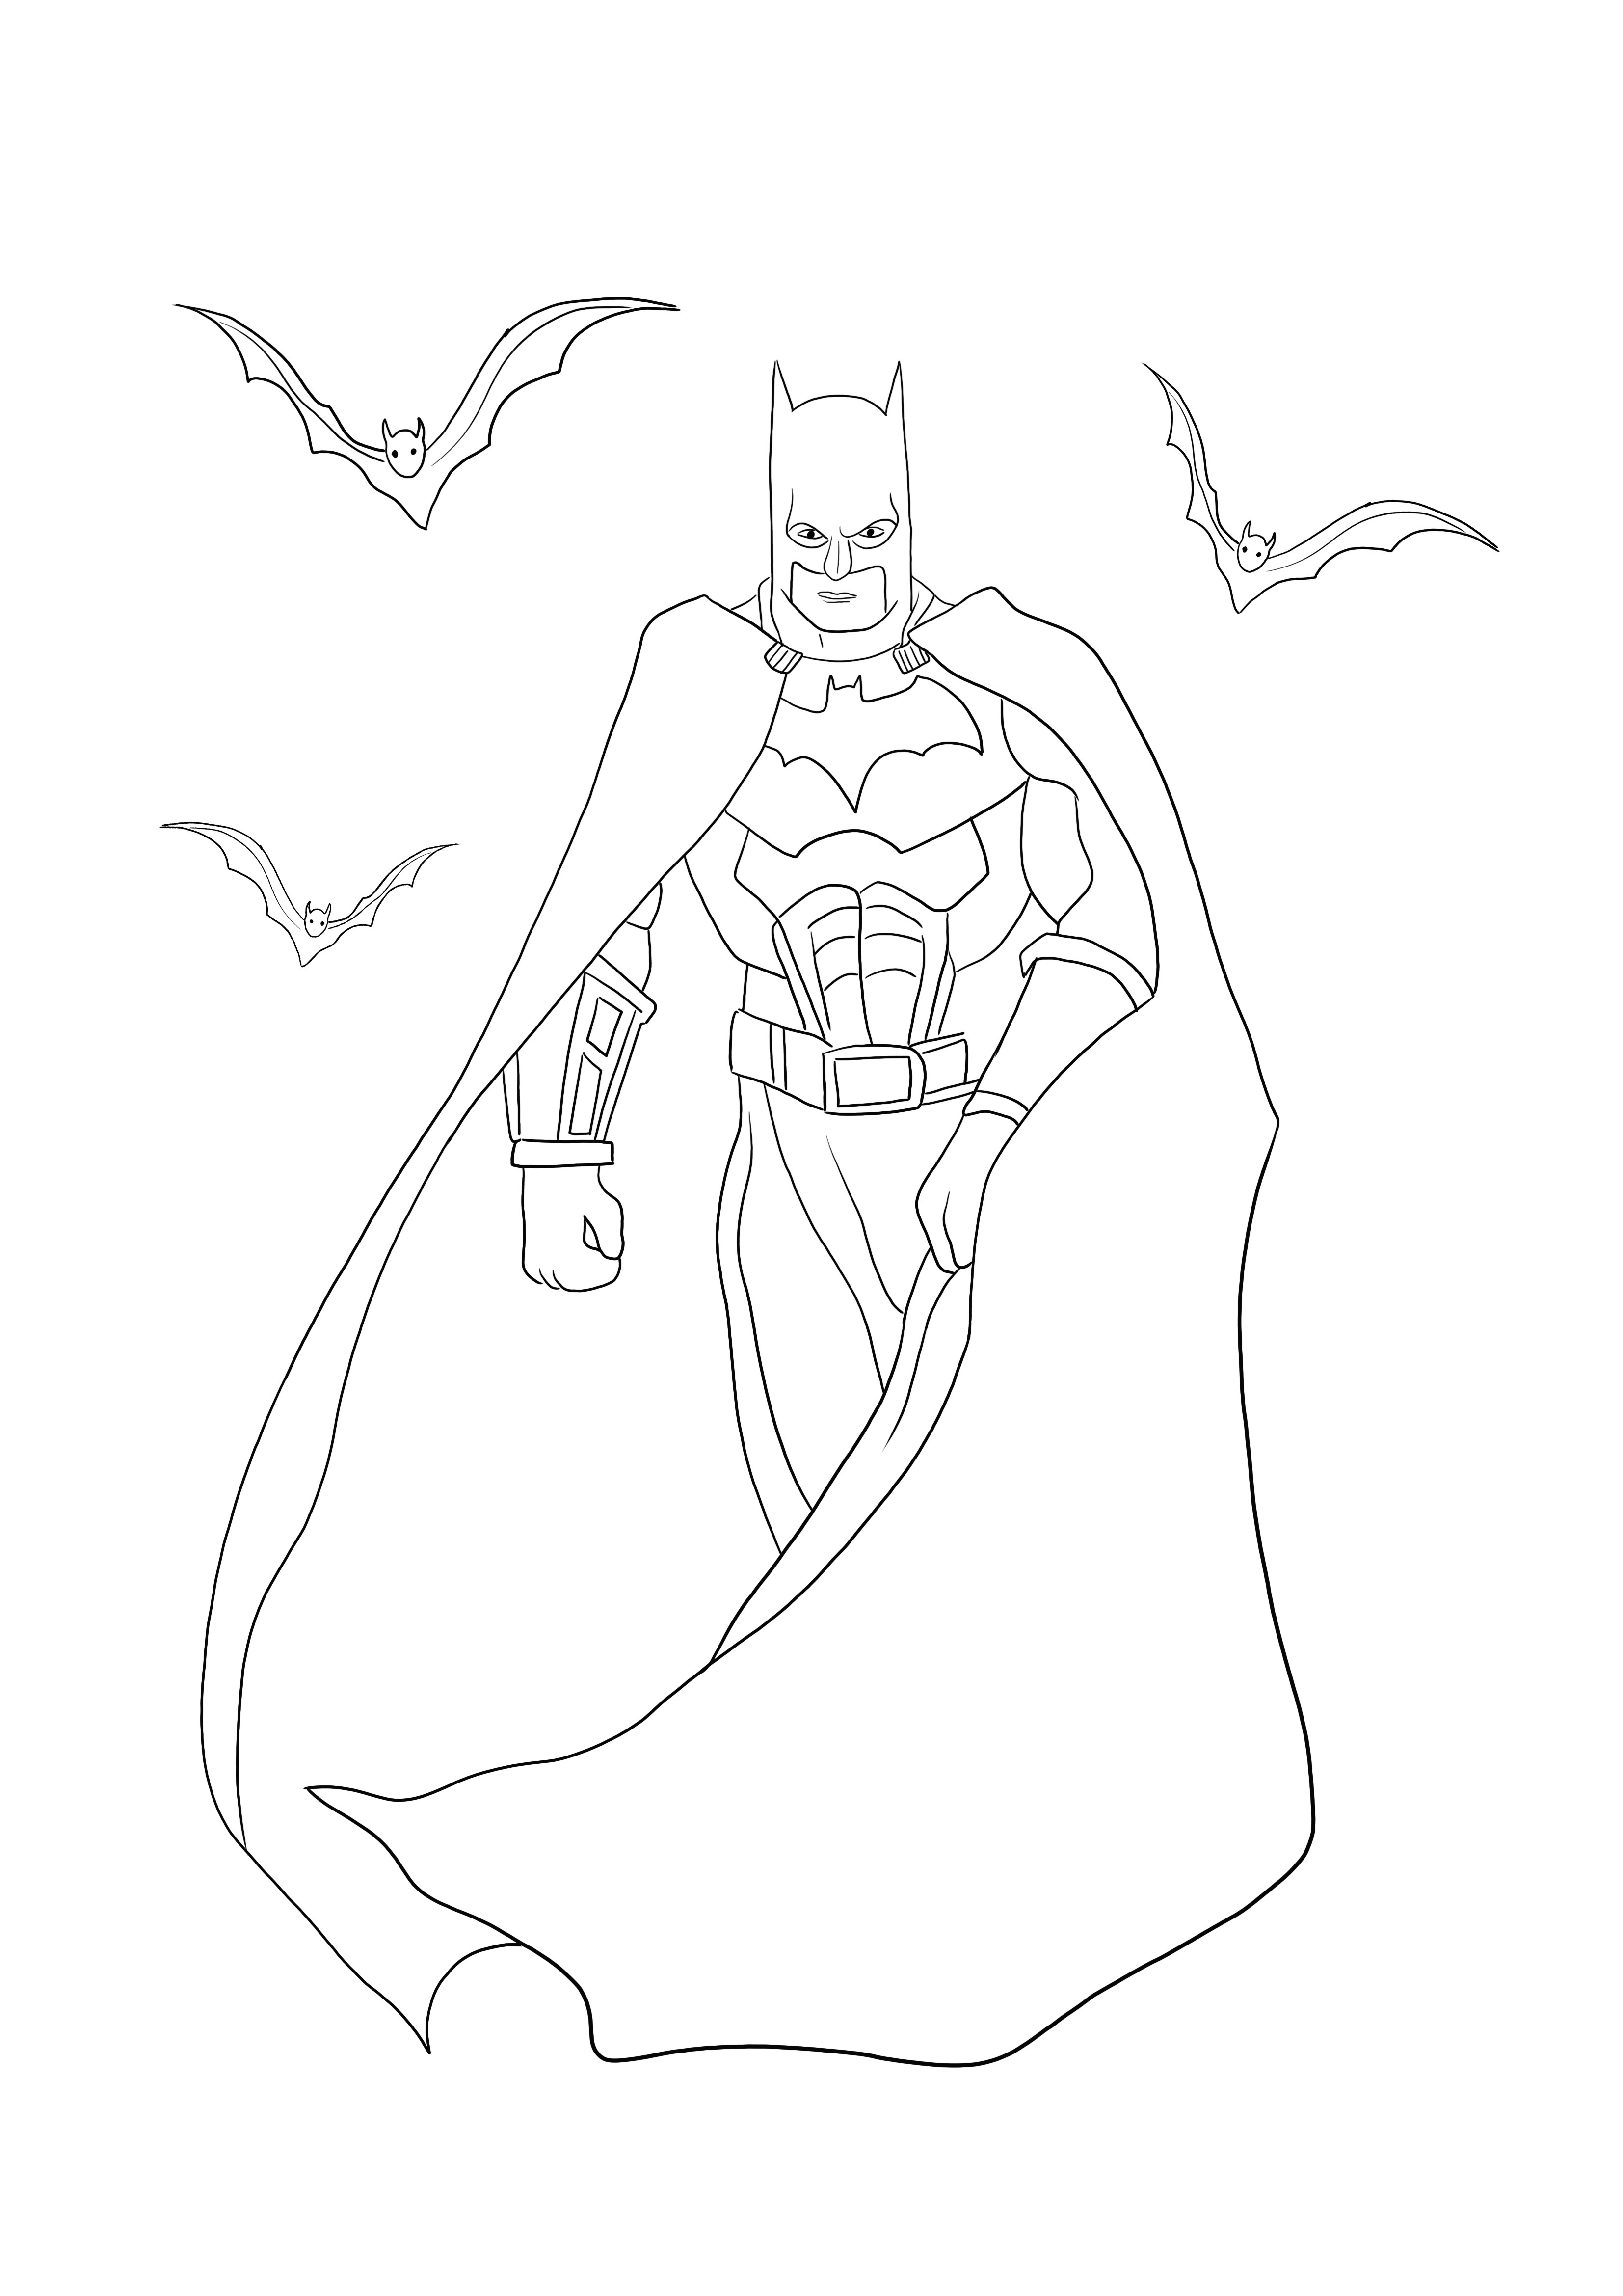 Batman met vleermuizen kleurplaat kan gratis worden gedownload of afgedrukt om plezier te hebben kleurplaat